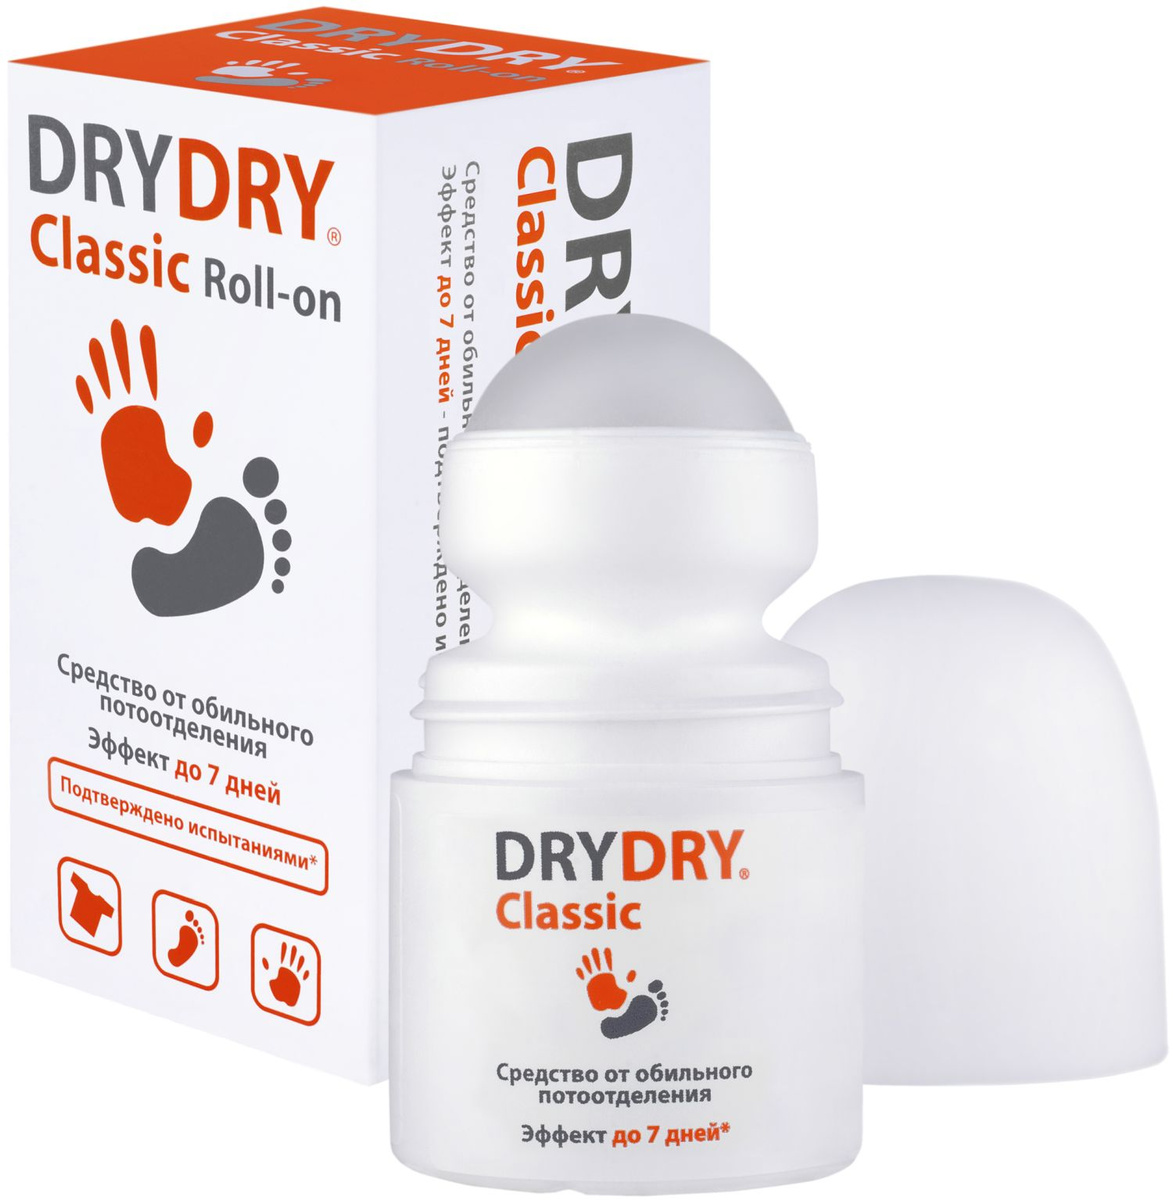 Дезодоранты Dry Dry отзывы